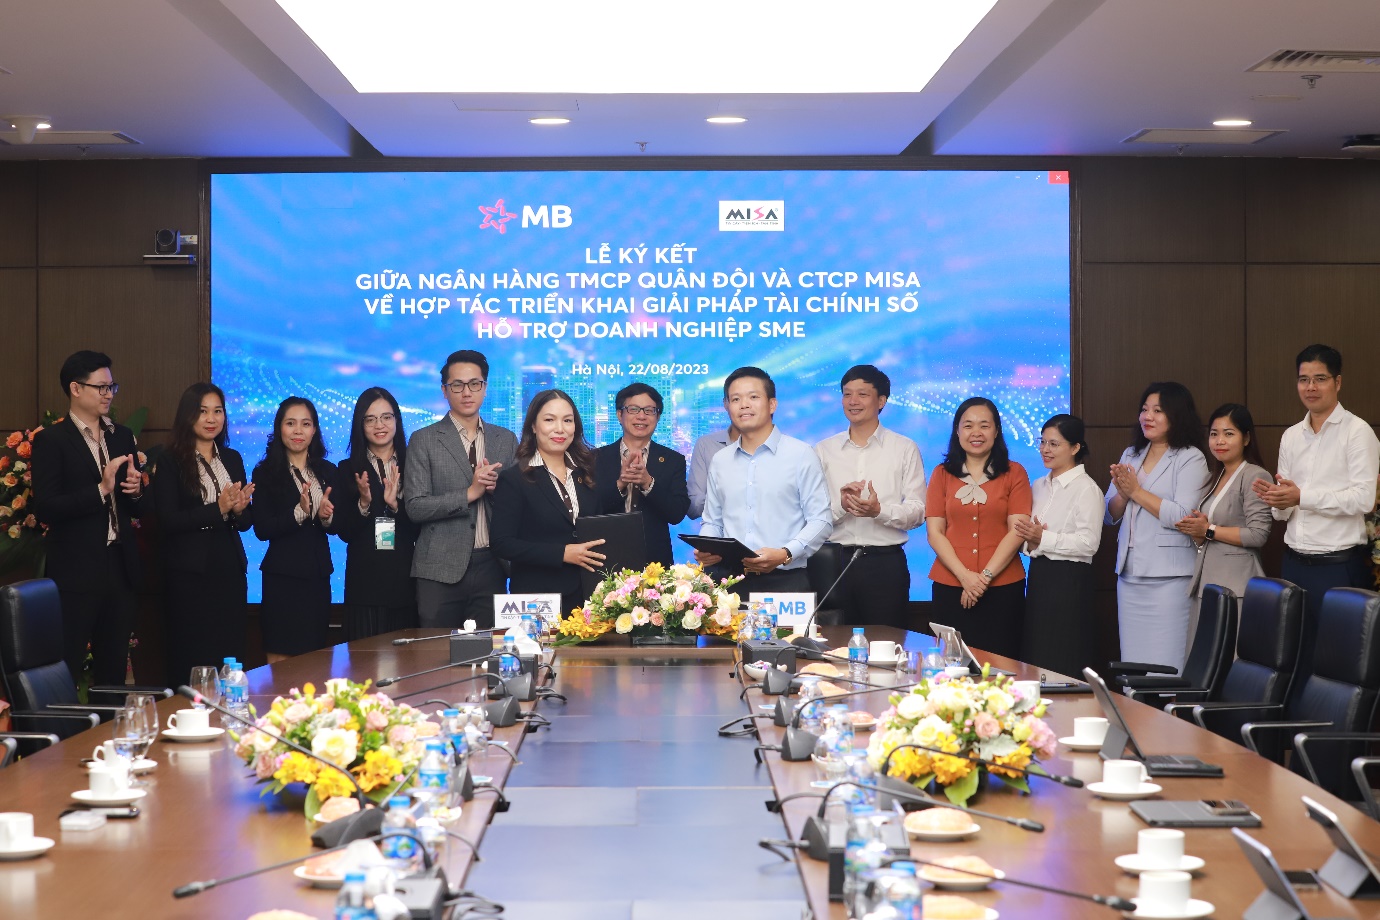 MISA và MB ký kết hợp tác triển khai giải pháp tài chính số cho SMEs - Ảnh 1.